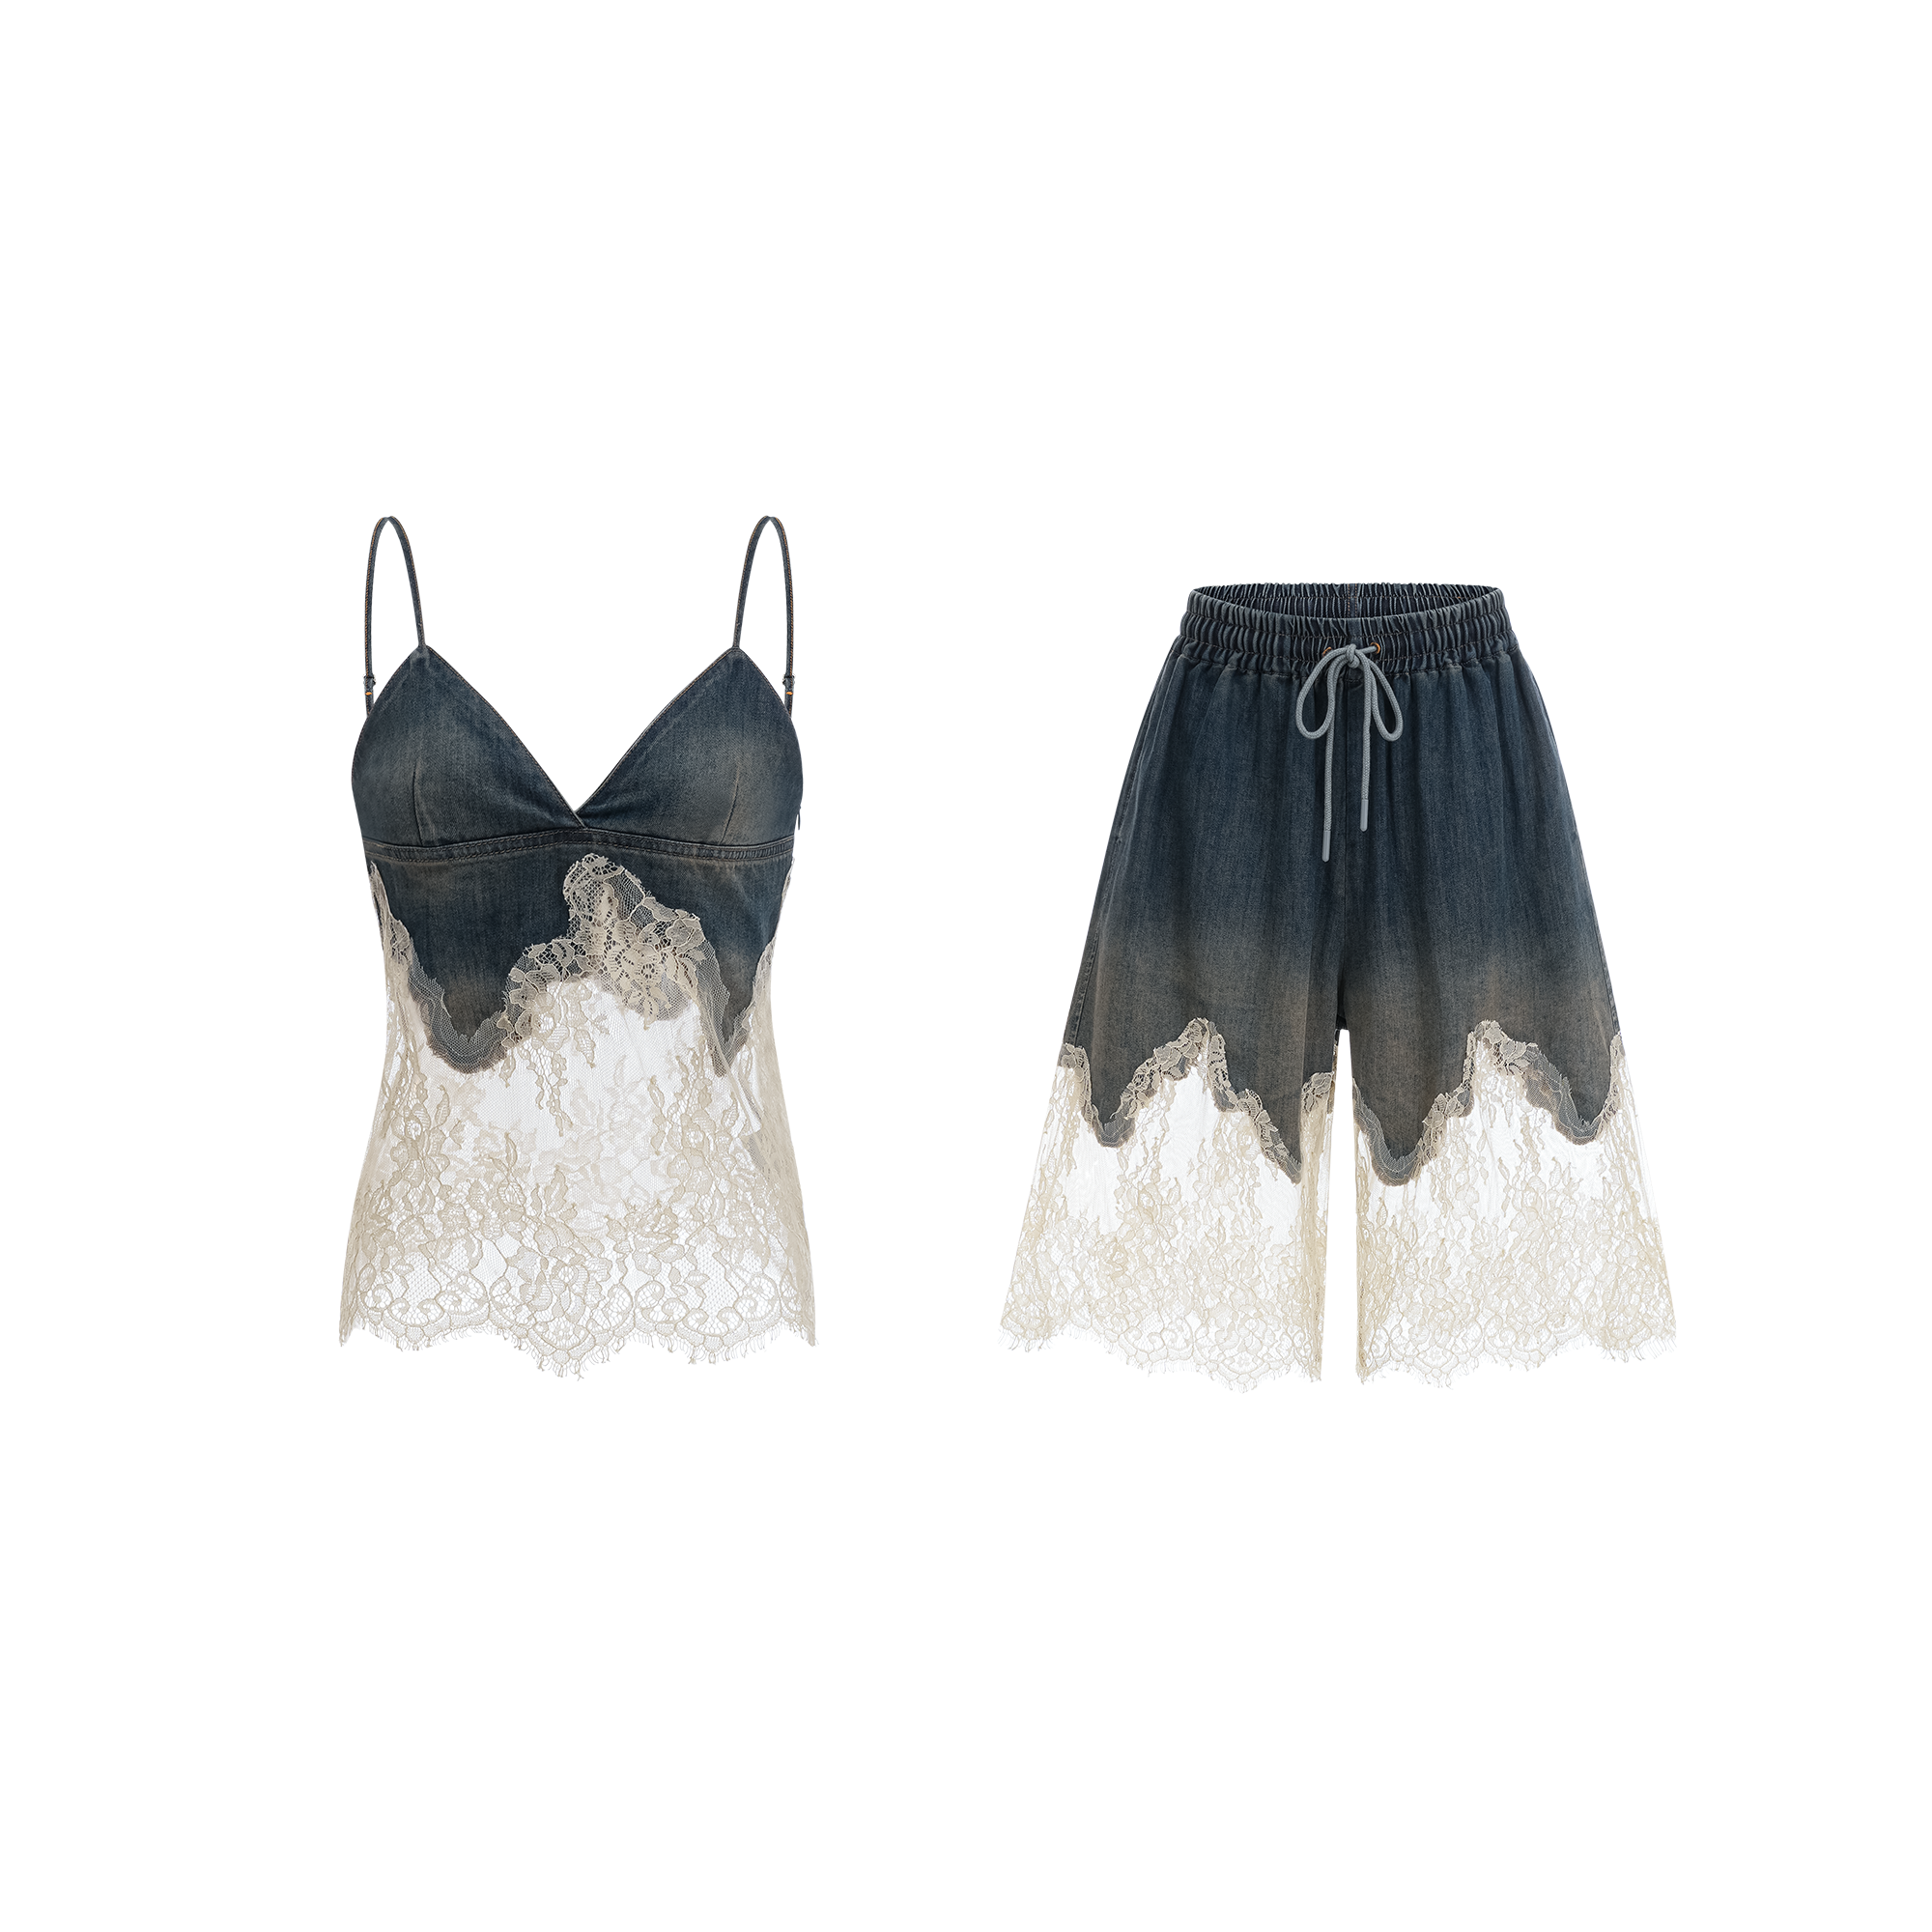 Sylvie lace-detail denim top & shorts matching set